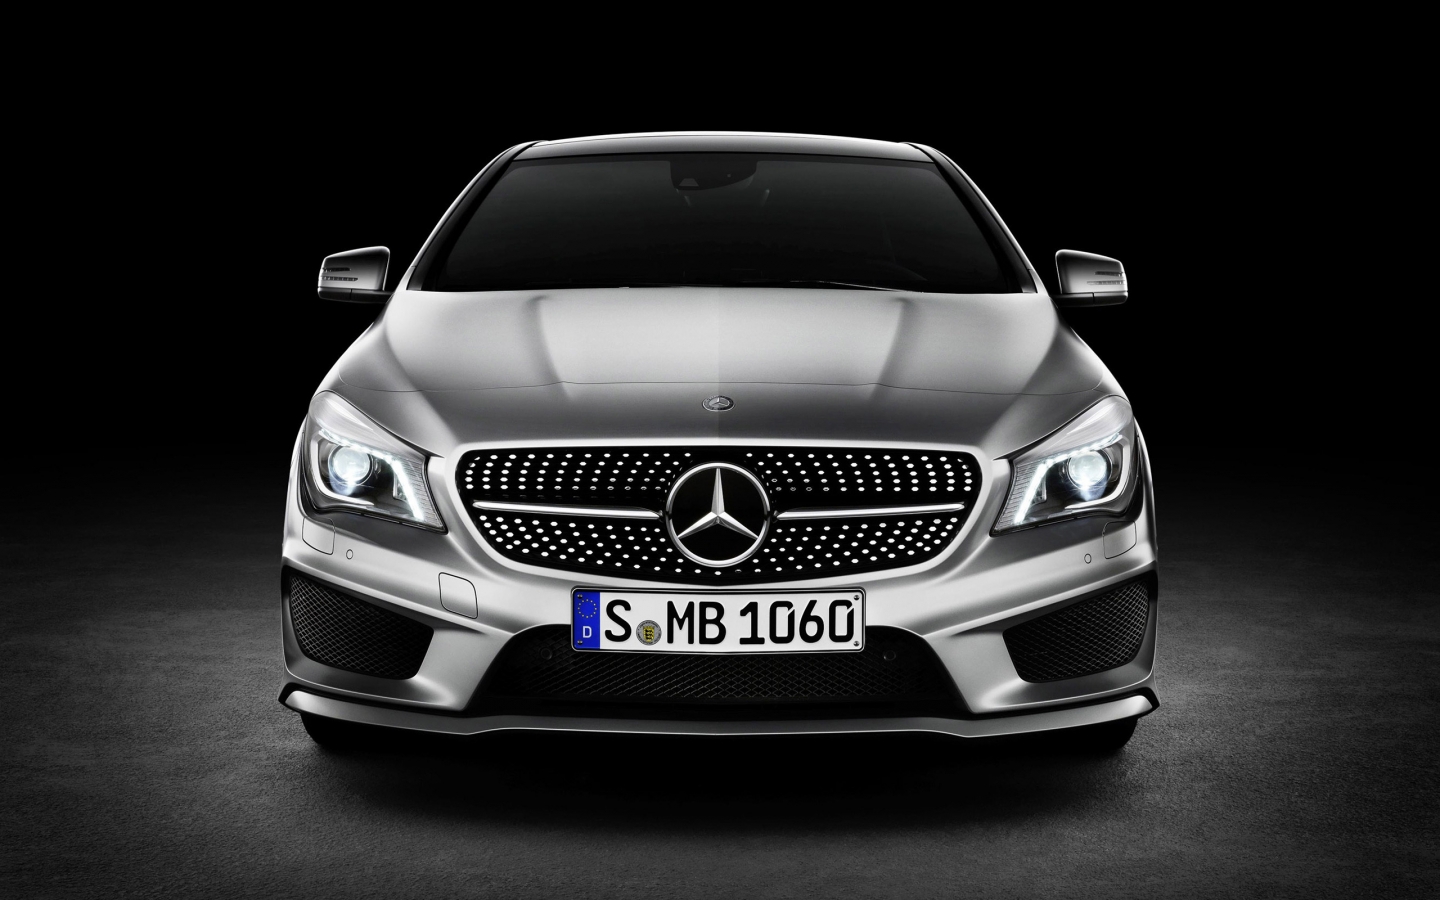 Mercedes Benz CLA Class Studio for 1440 x 900 widescreen resolution